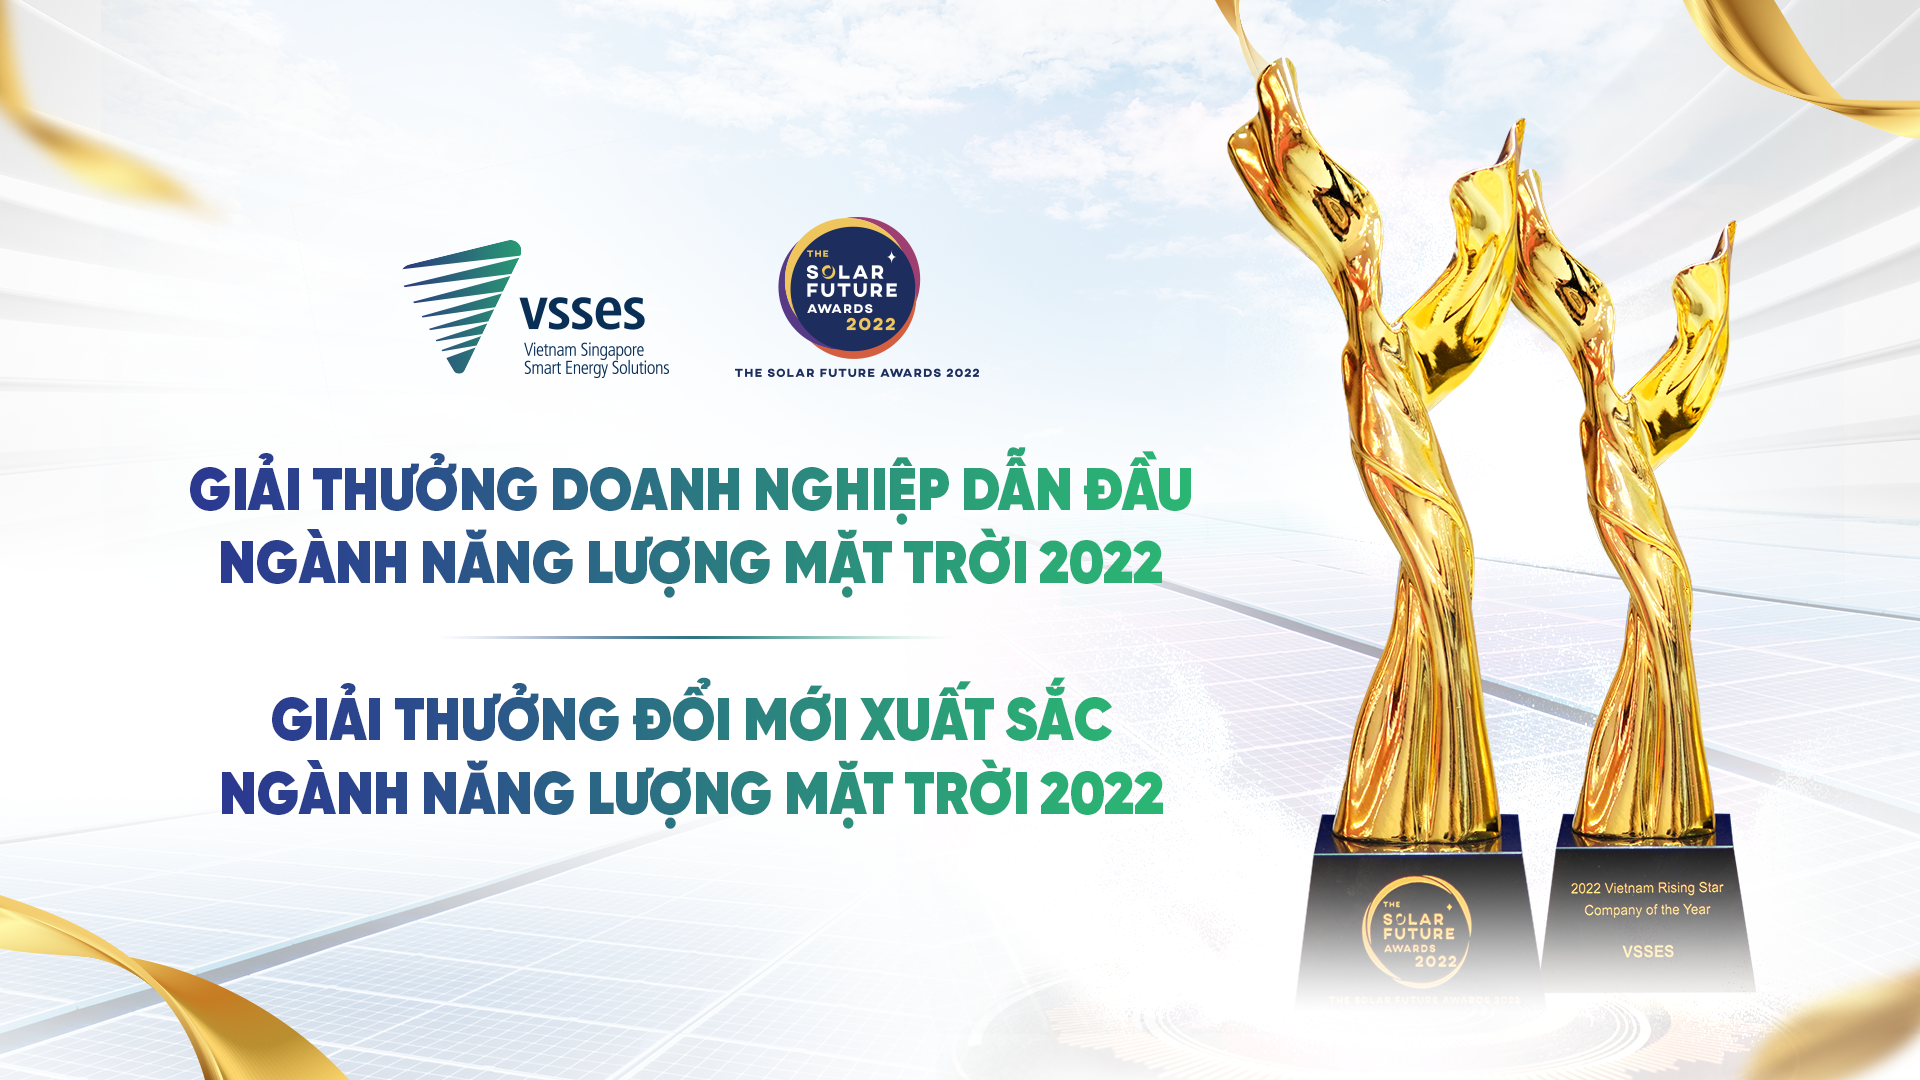 Hành Trình Đạt Hai Giải Thưởng Của VSSES Tại The Solar Future Awards 2022